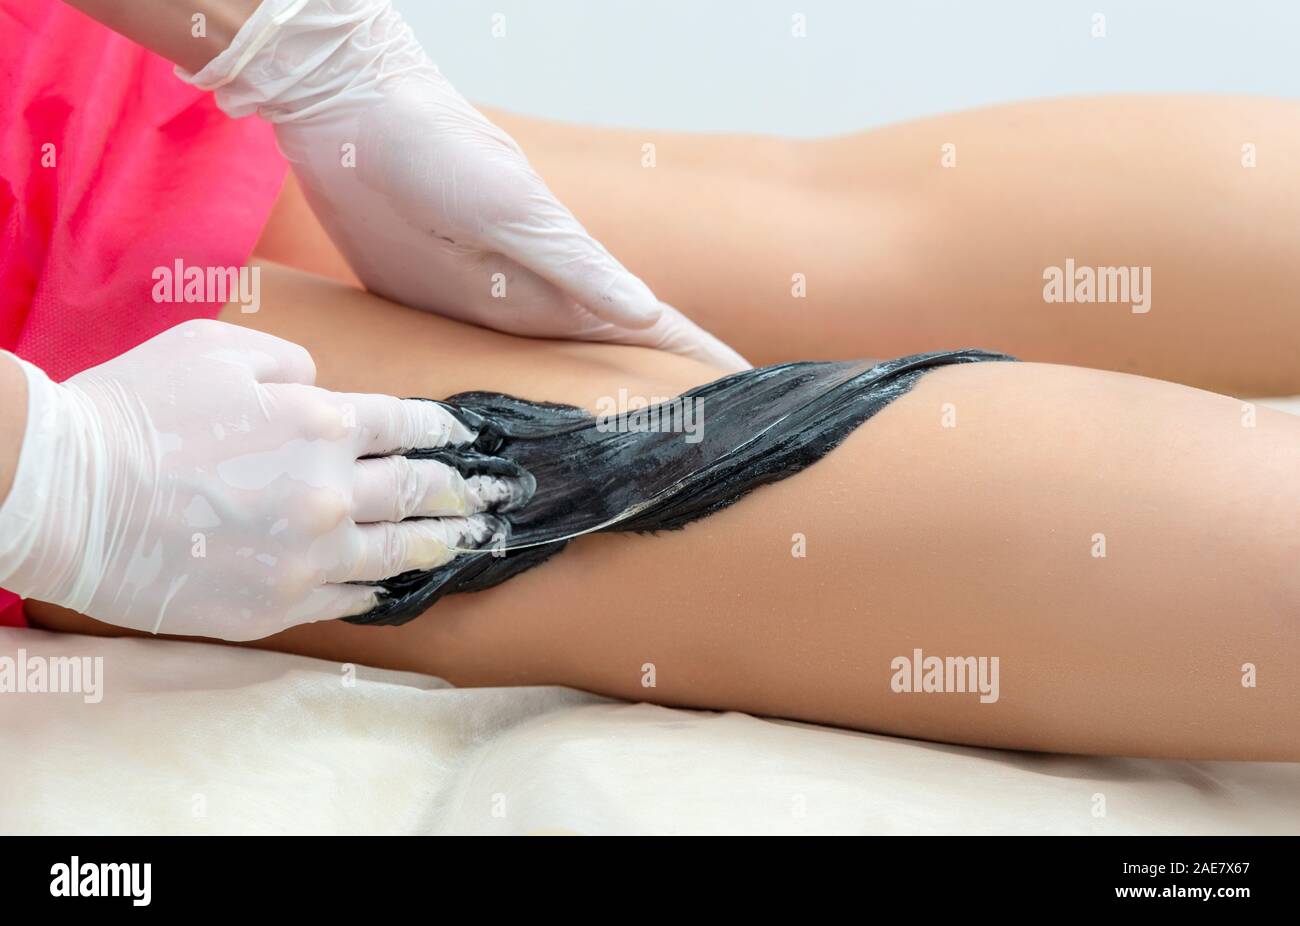 Die kosmetologin führt das Verfahren der Haarentfernung an den Beinen in der kosmetologie Büro Stockfoto